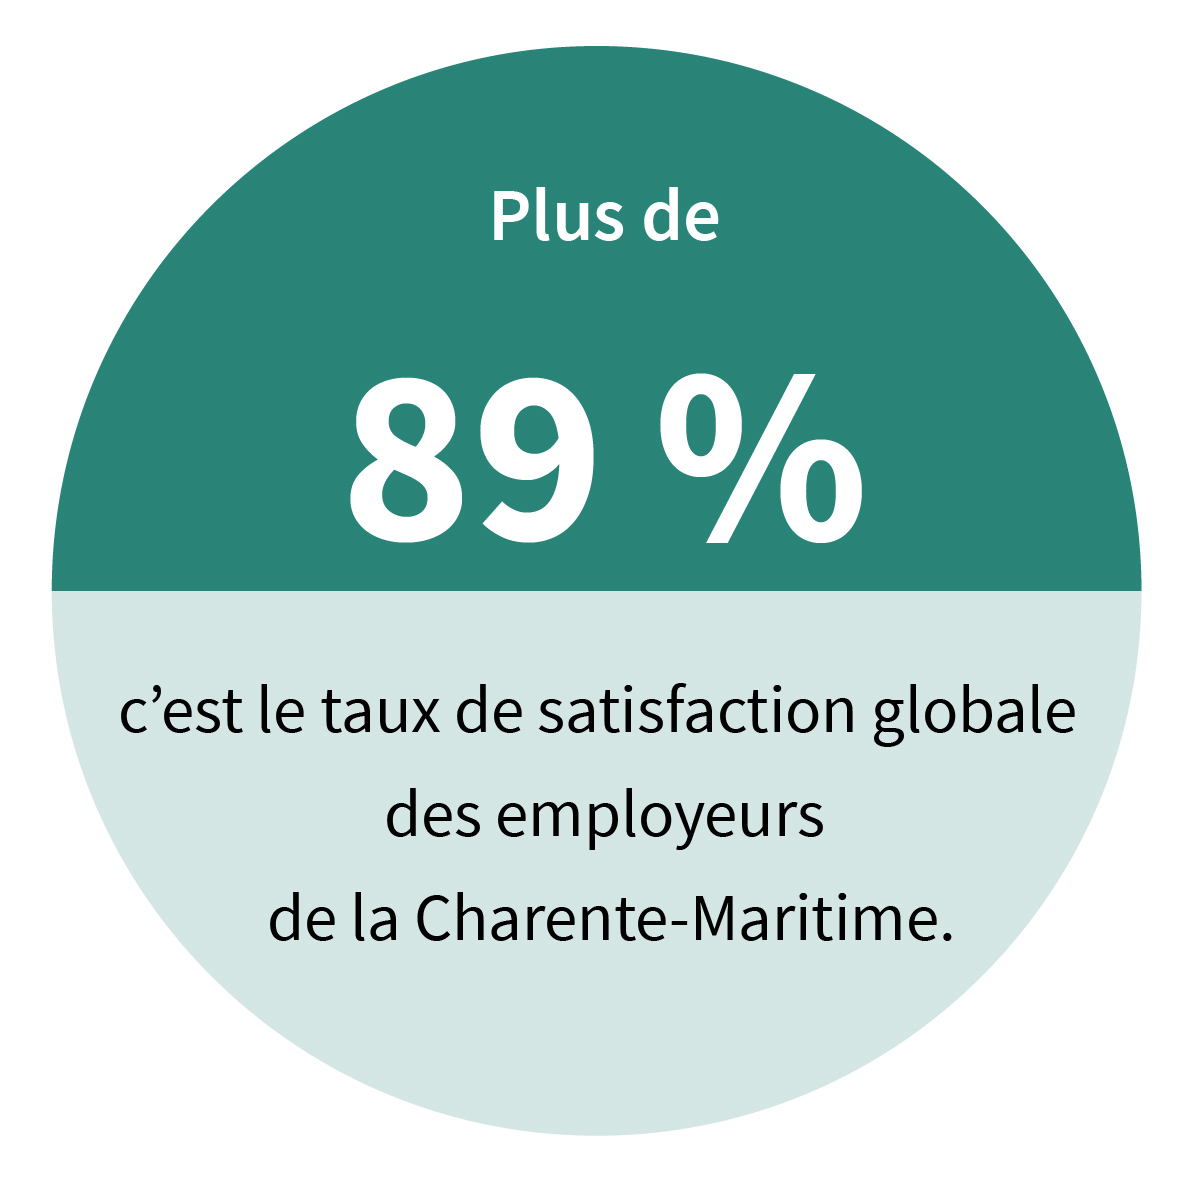 Plus de 89 %, c’est le taux de satisfaction globale des employeurs de la Charente-Maritime.